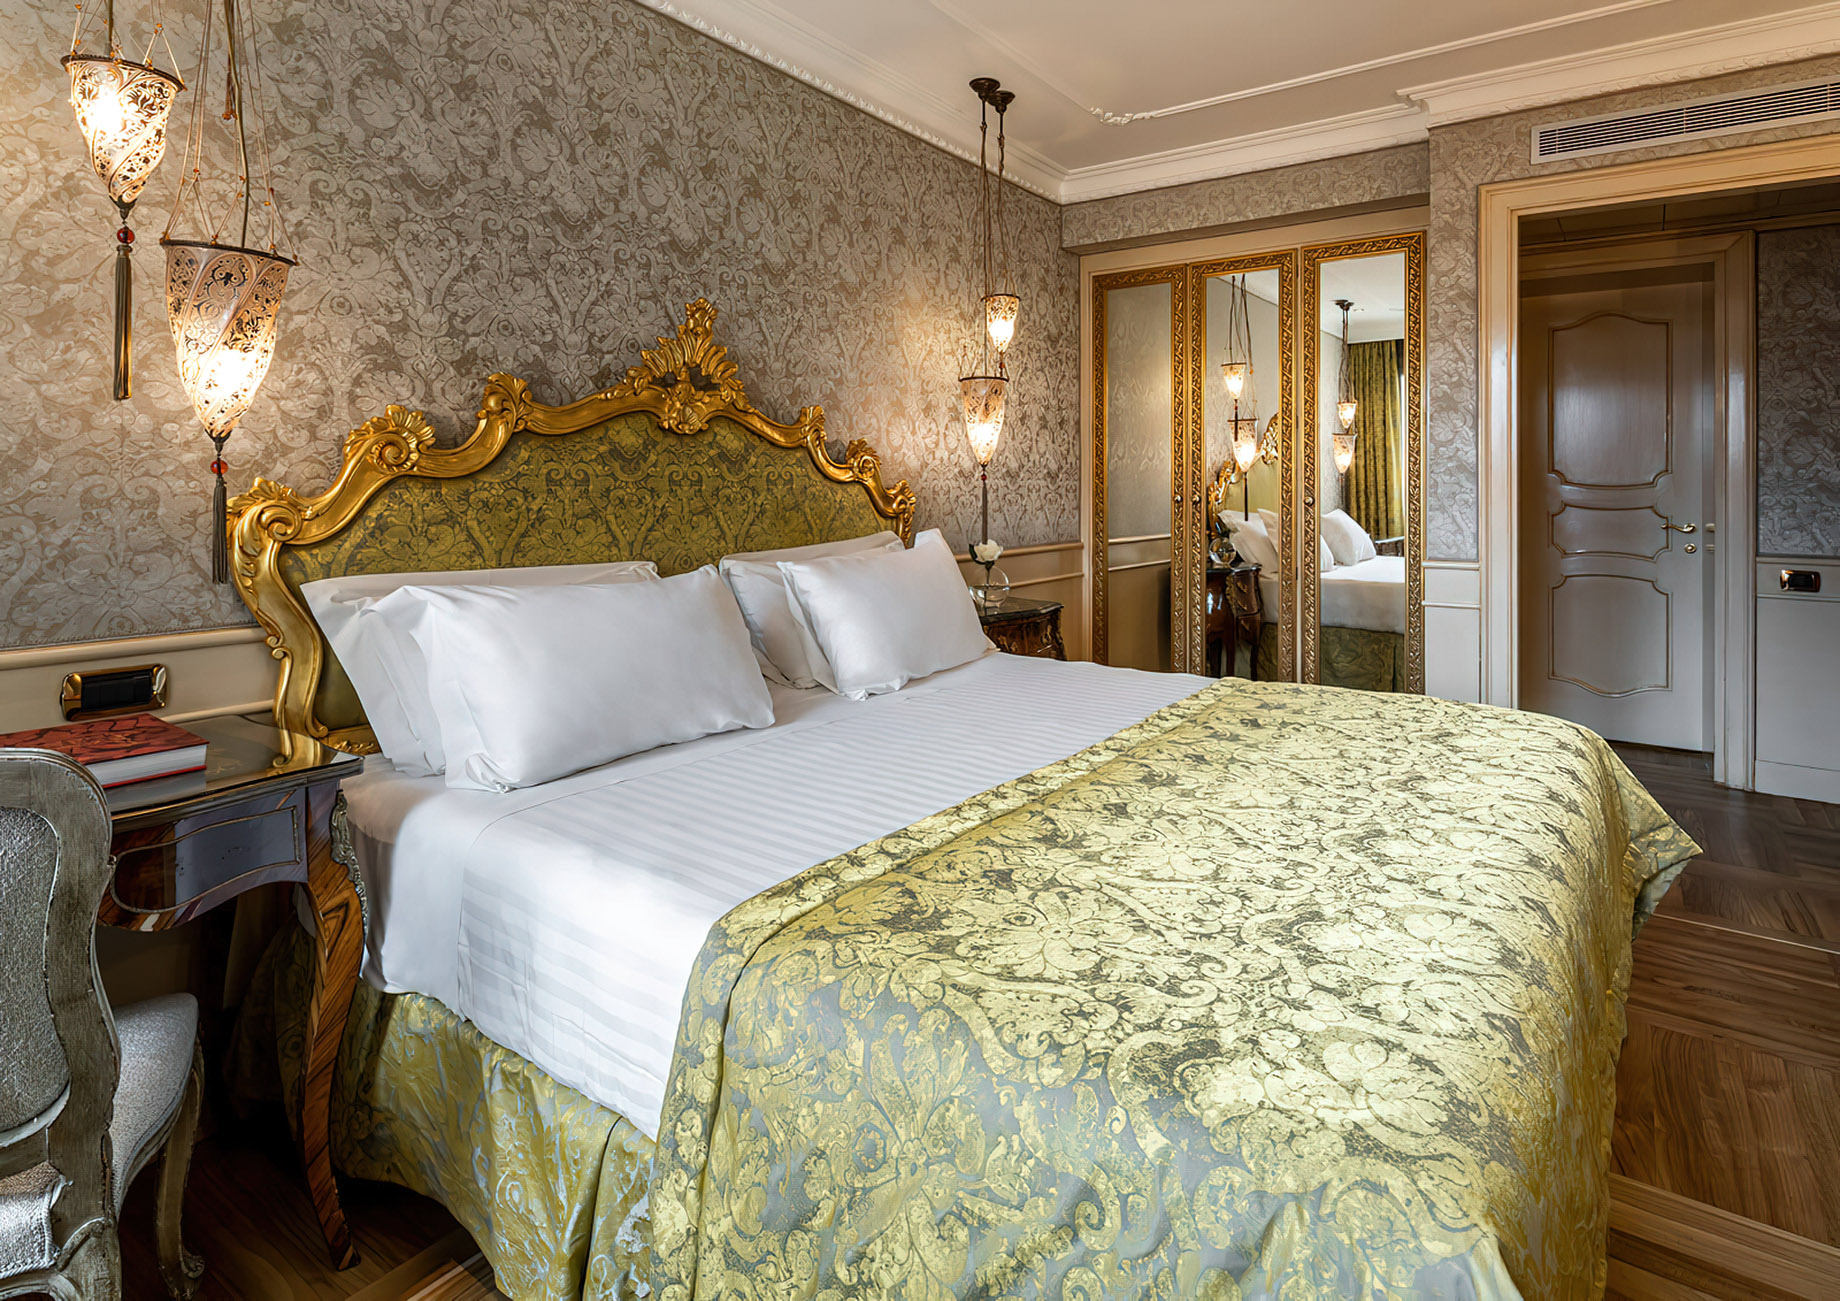 Baglioni Hotel Luna, Venezia – Venice, Italy – Sansovino Family Lagoon View Suite Bedroom